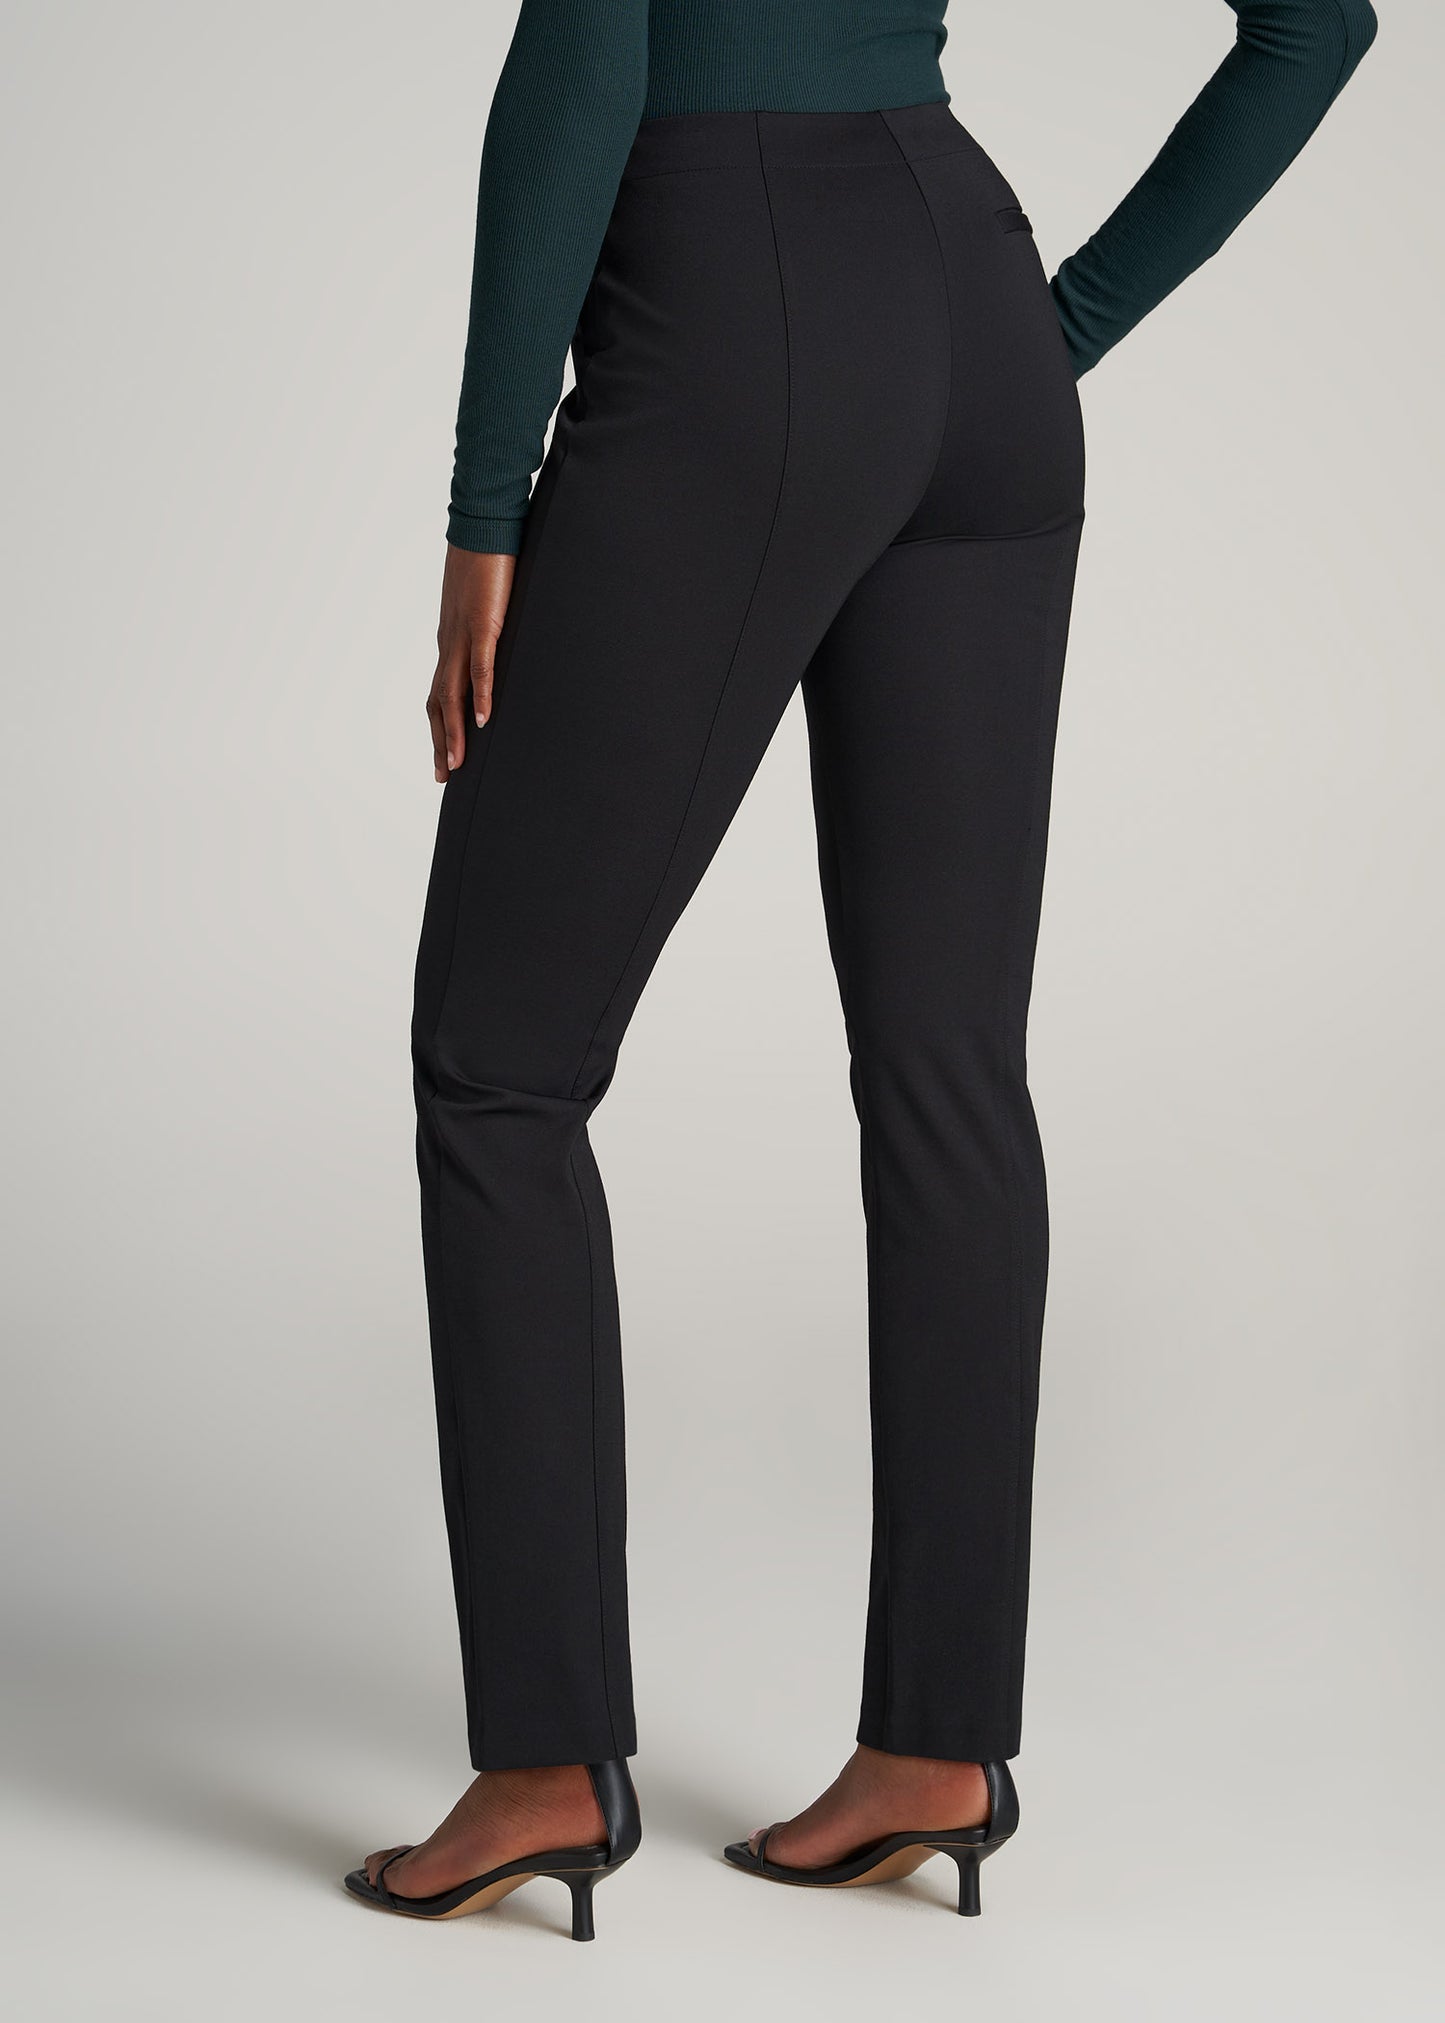 Matalan Womens Black Dress Pants Trousers Size 8 L28 in – Preworn Ltd